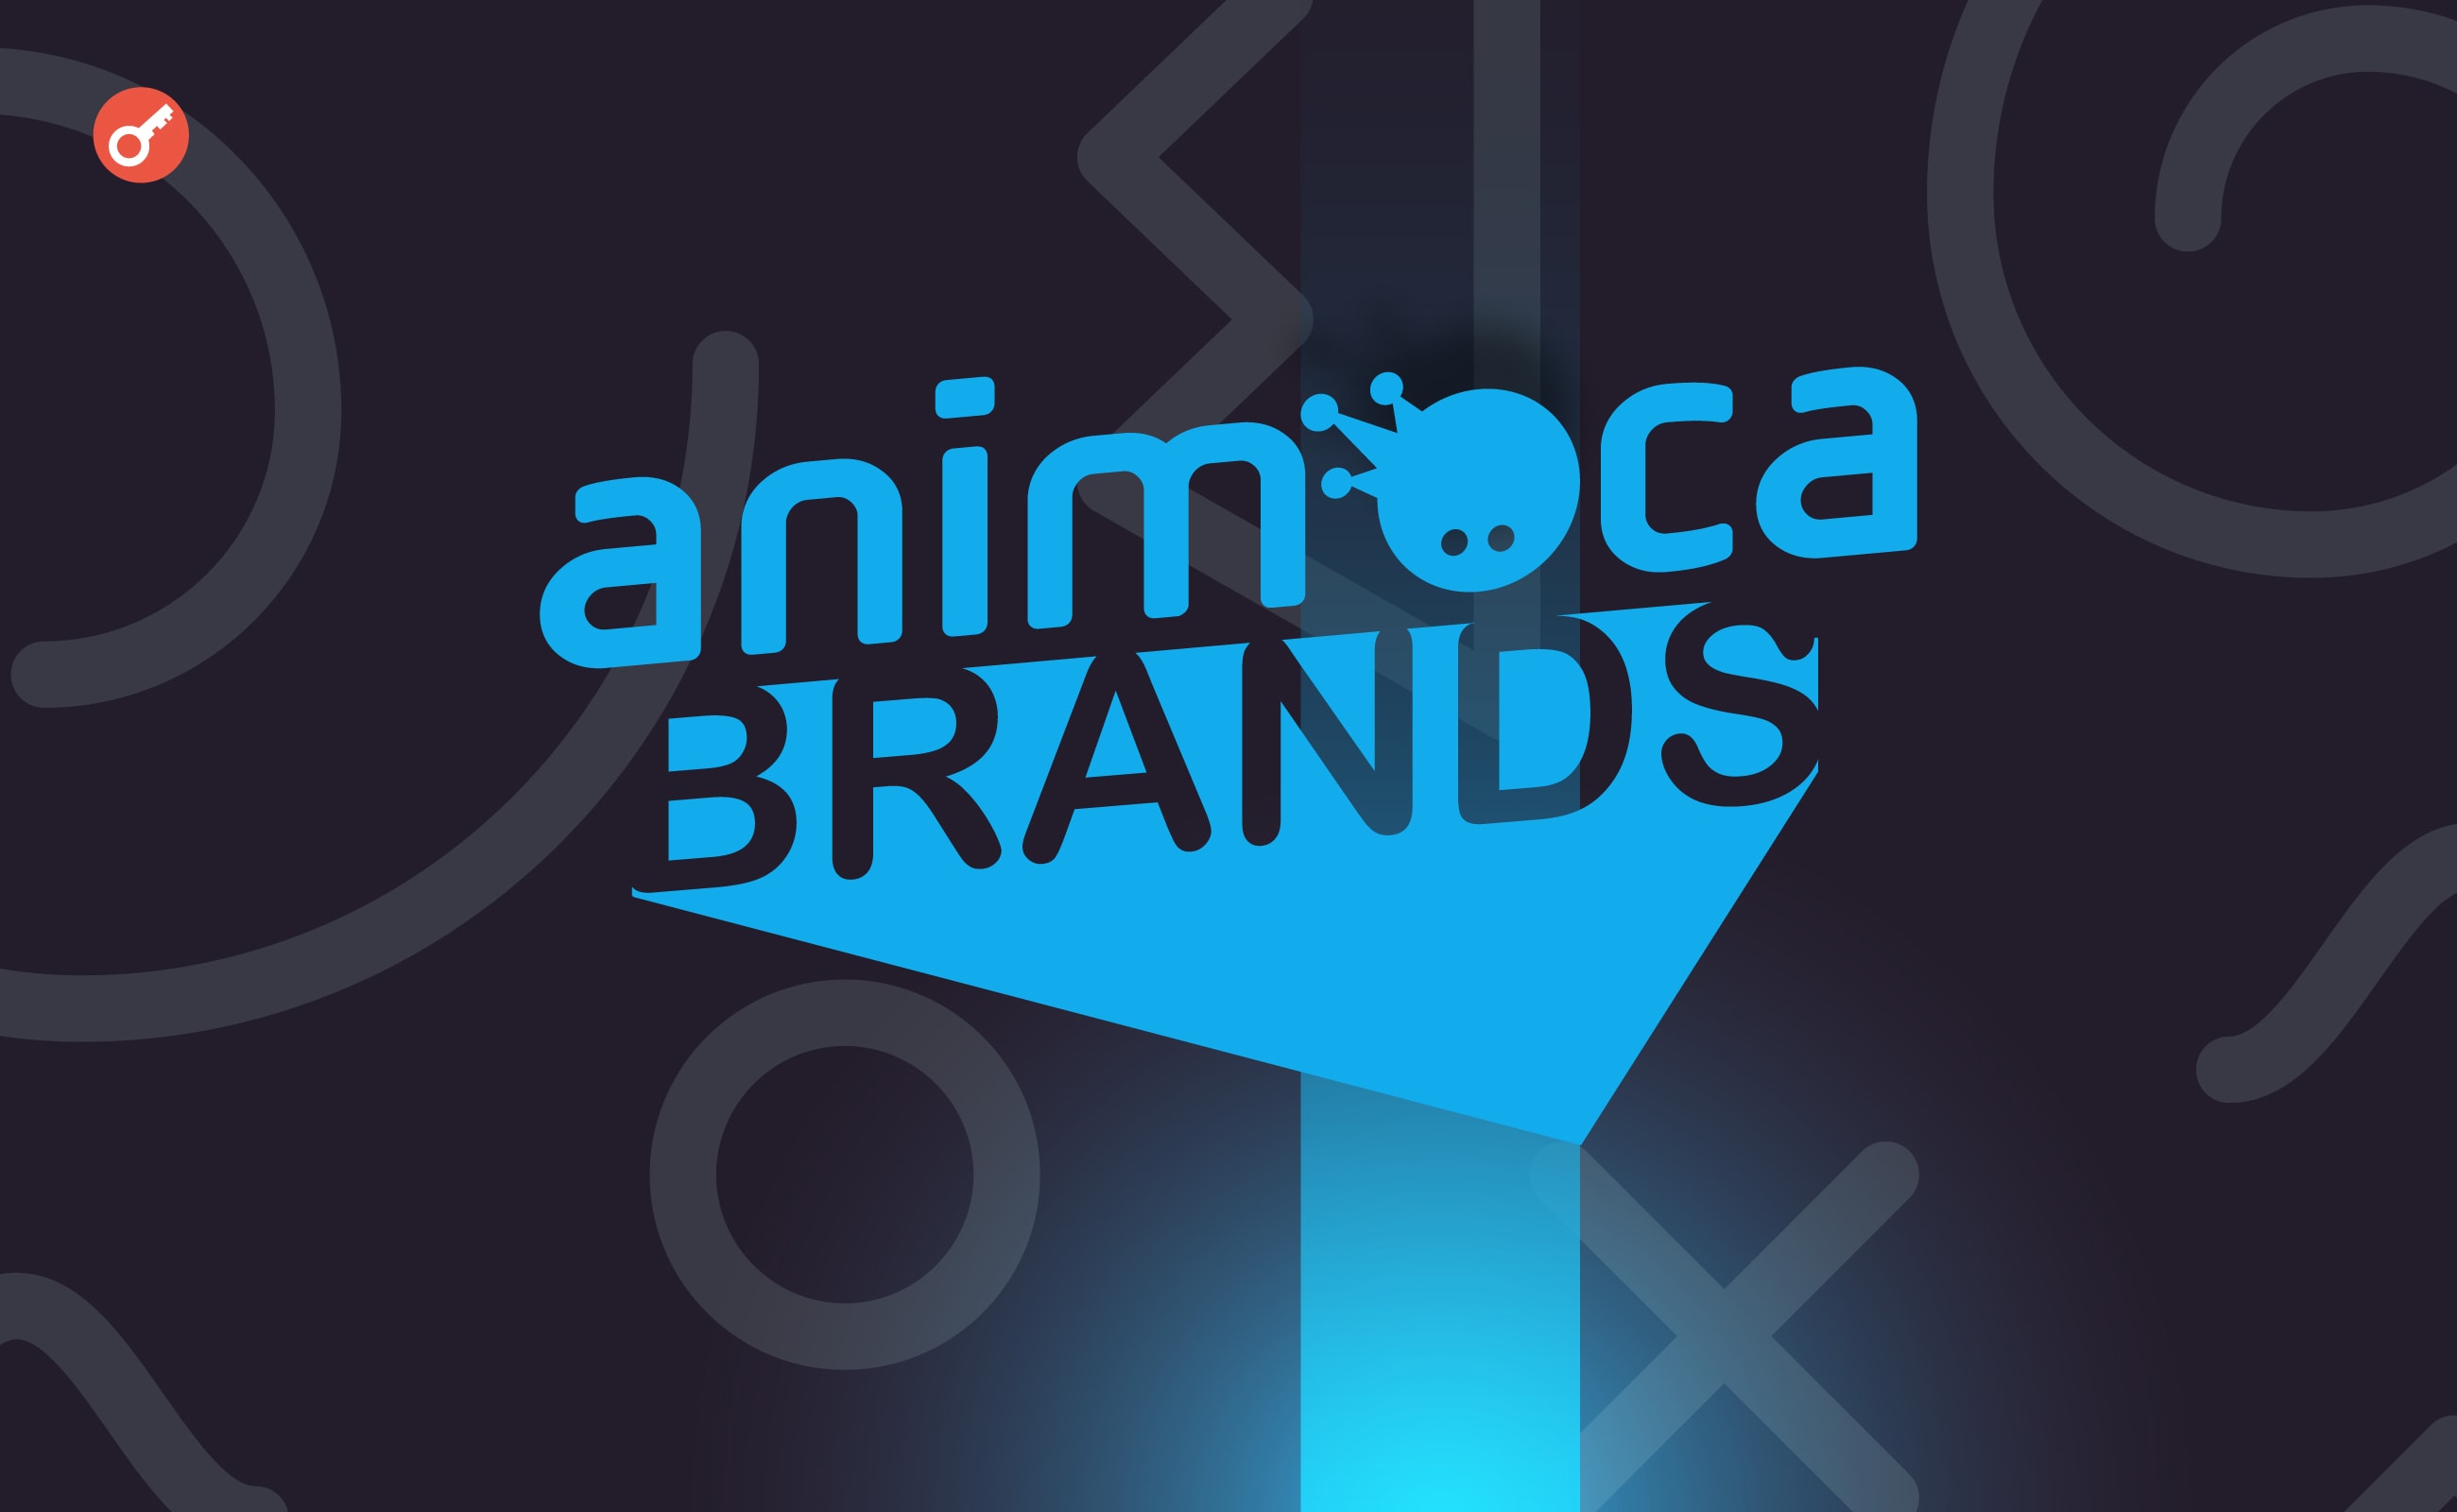 Animoca Brands инвестировала в экосистему TON и стала крупнейшим валидатором блокчейна. Заглавный коллаж новости.